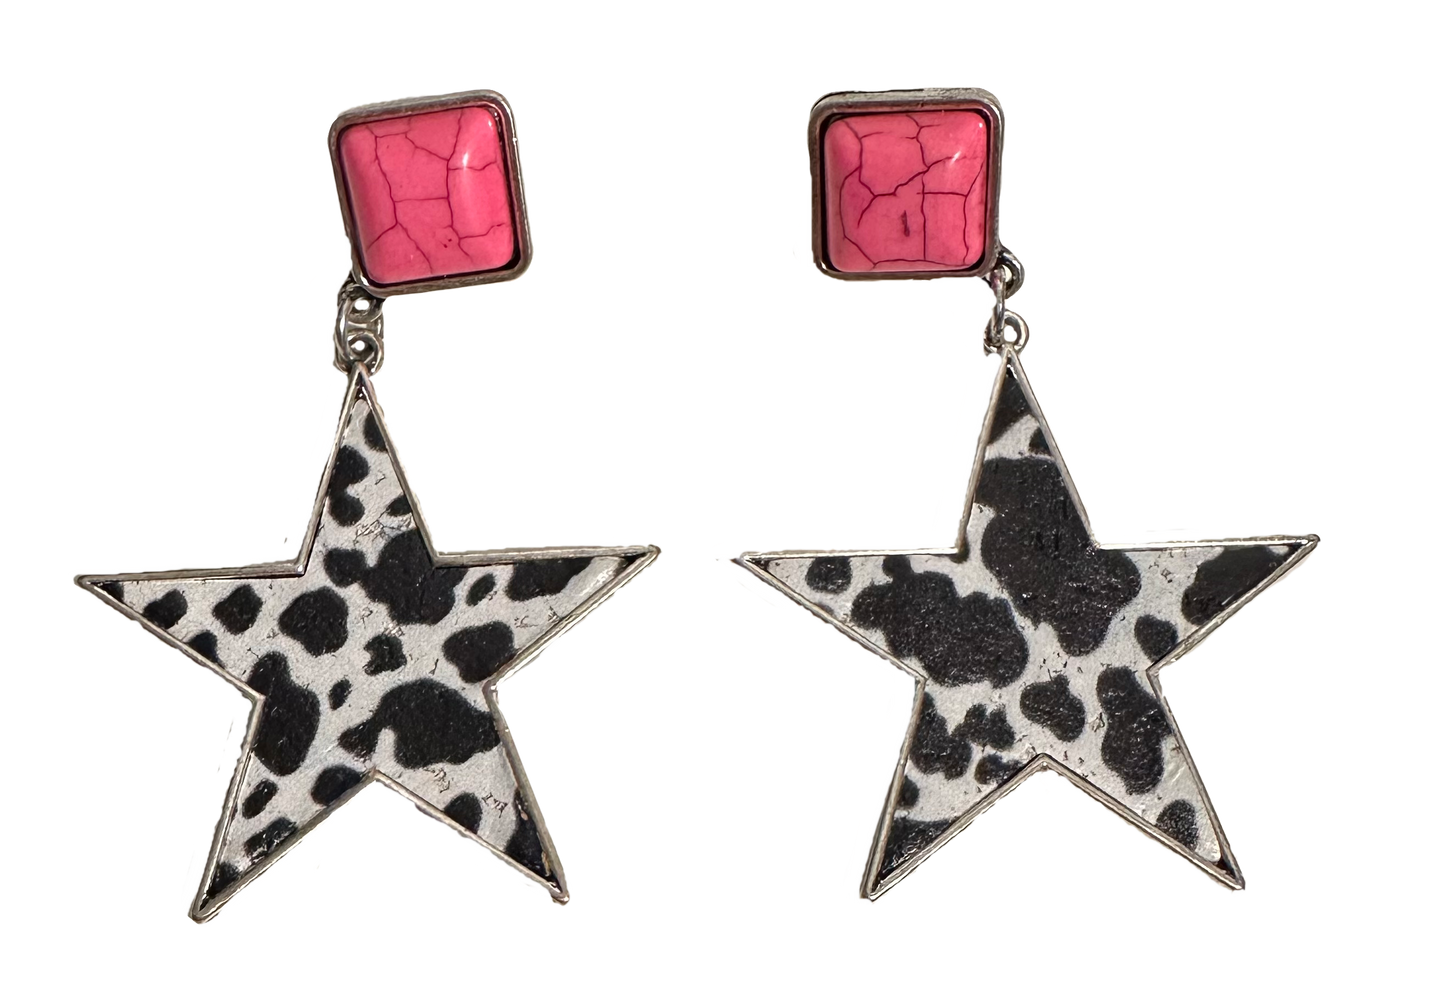 Star Cow Print Earrings